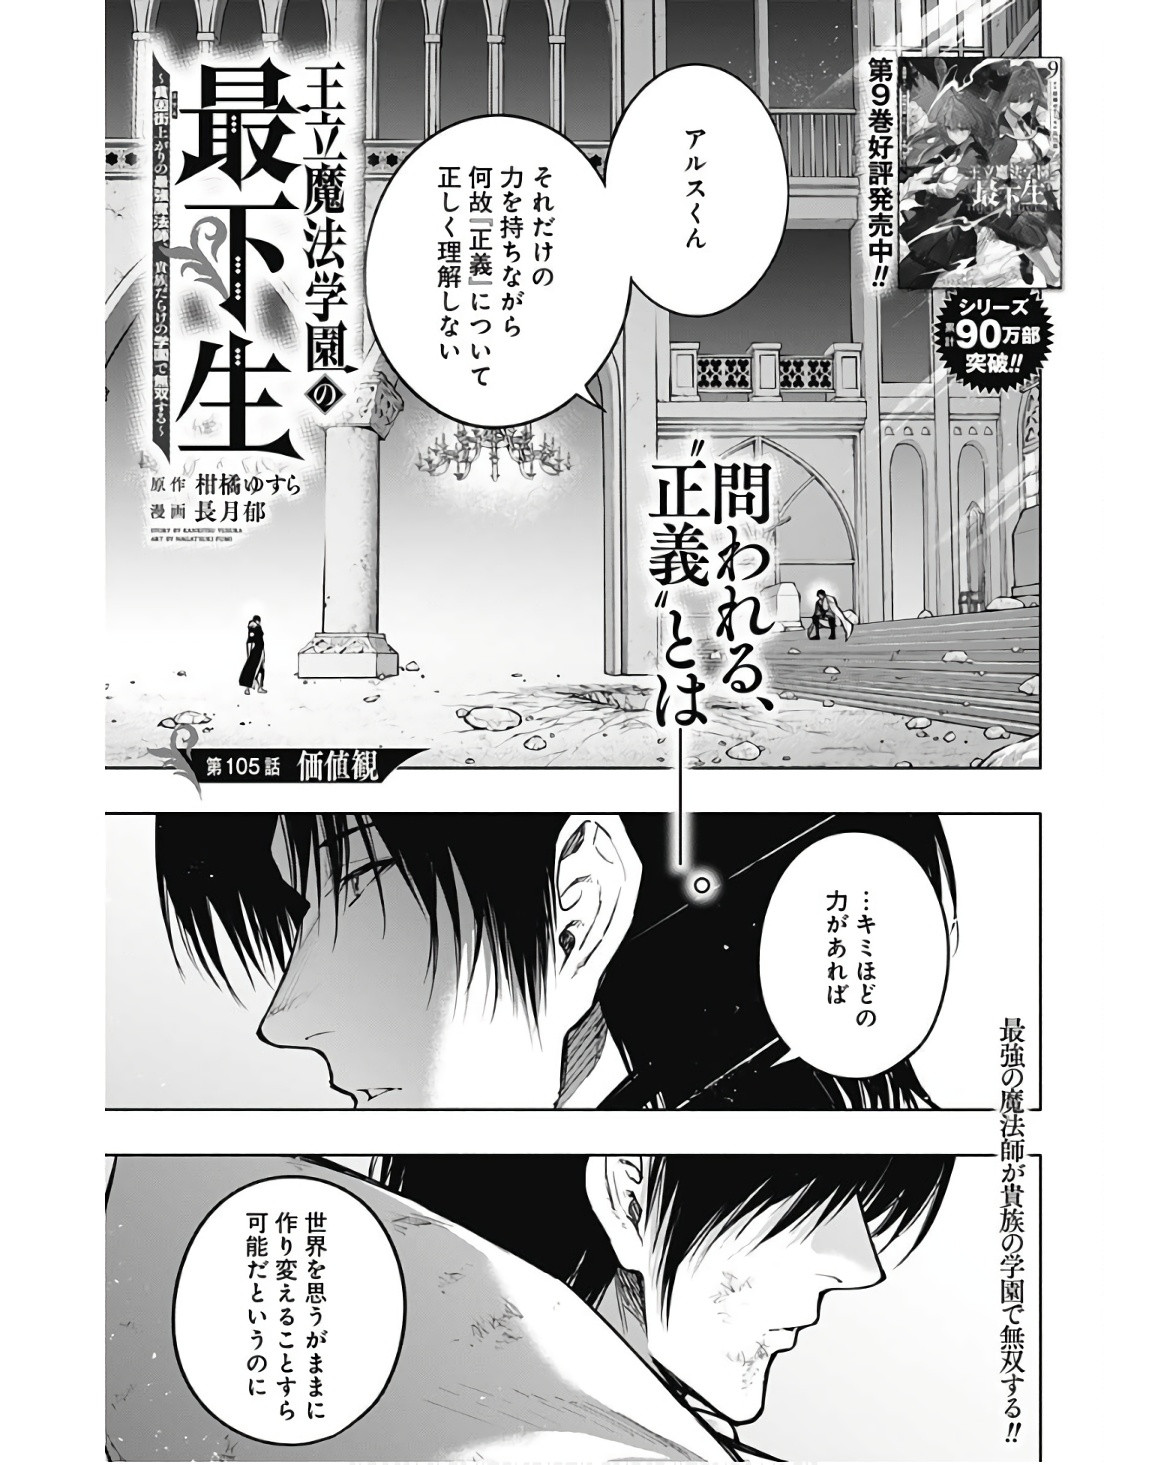 Oritsu-Maho-Gakuen-no-Saika-sei-Hinkon-gai-Suramu-Agari-no-Saikyo-Maho-Shi-Kizoku-darake-no-Gakuen-de-Muso-Suru - Chapter 105 - Page 1